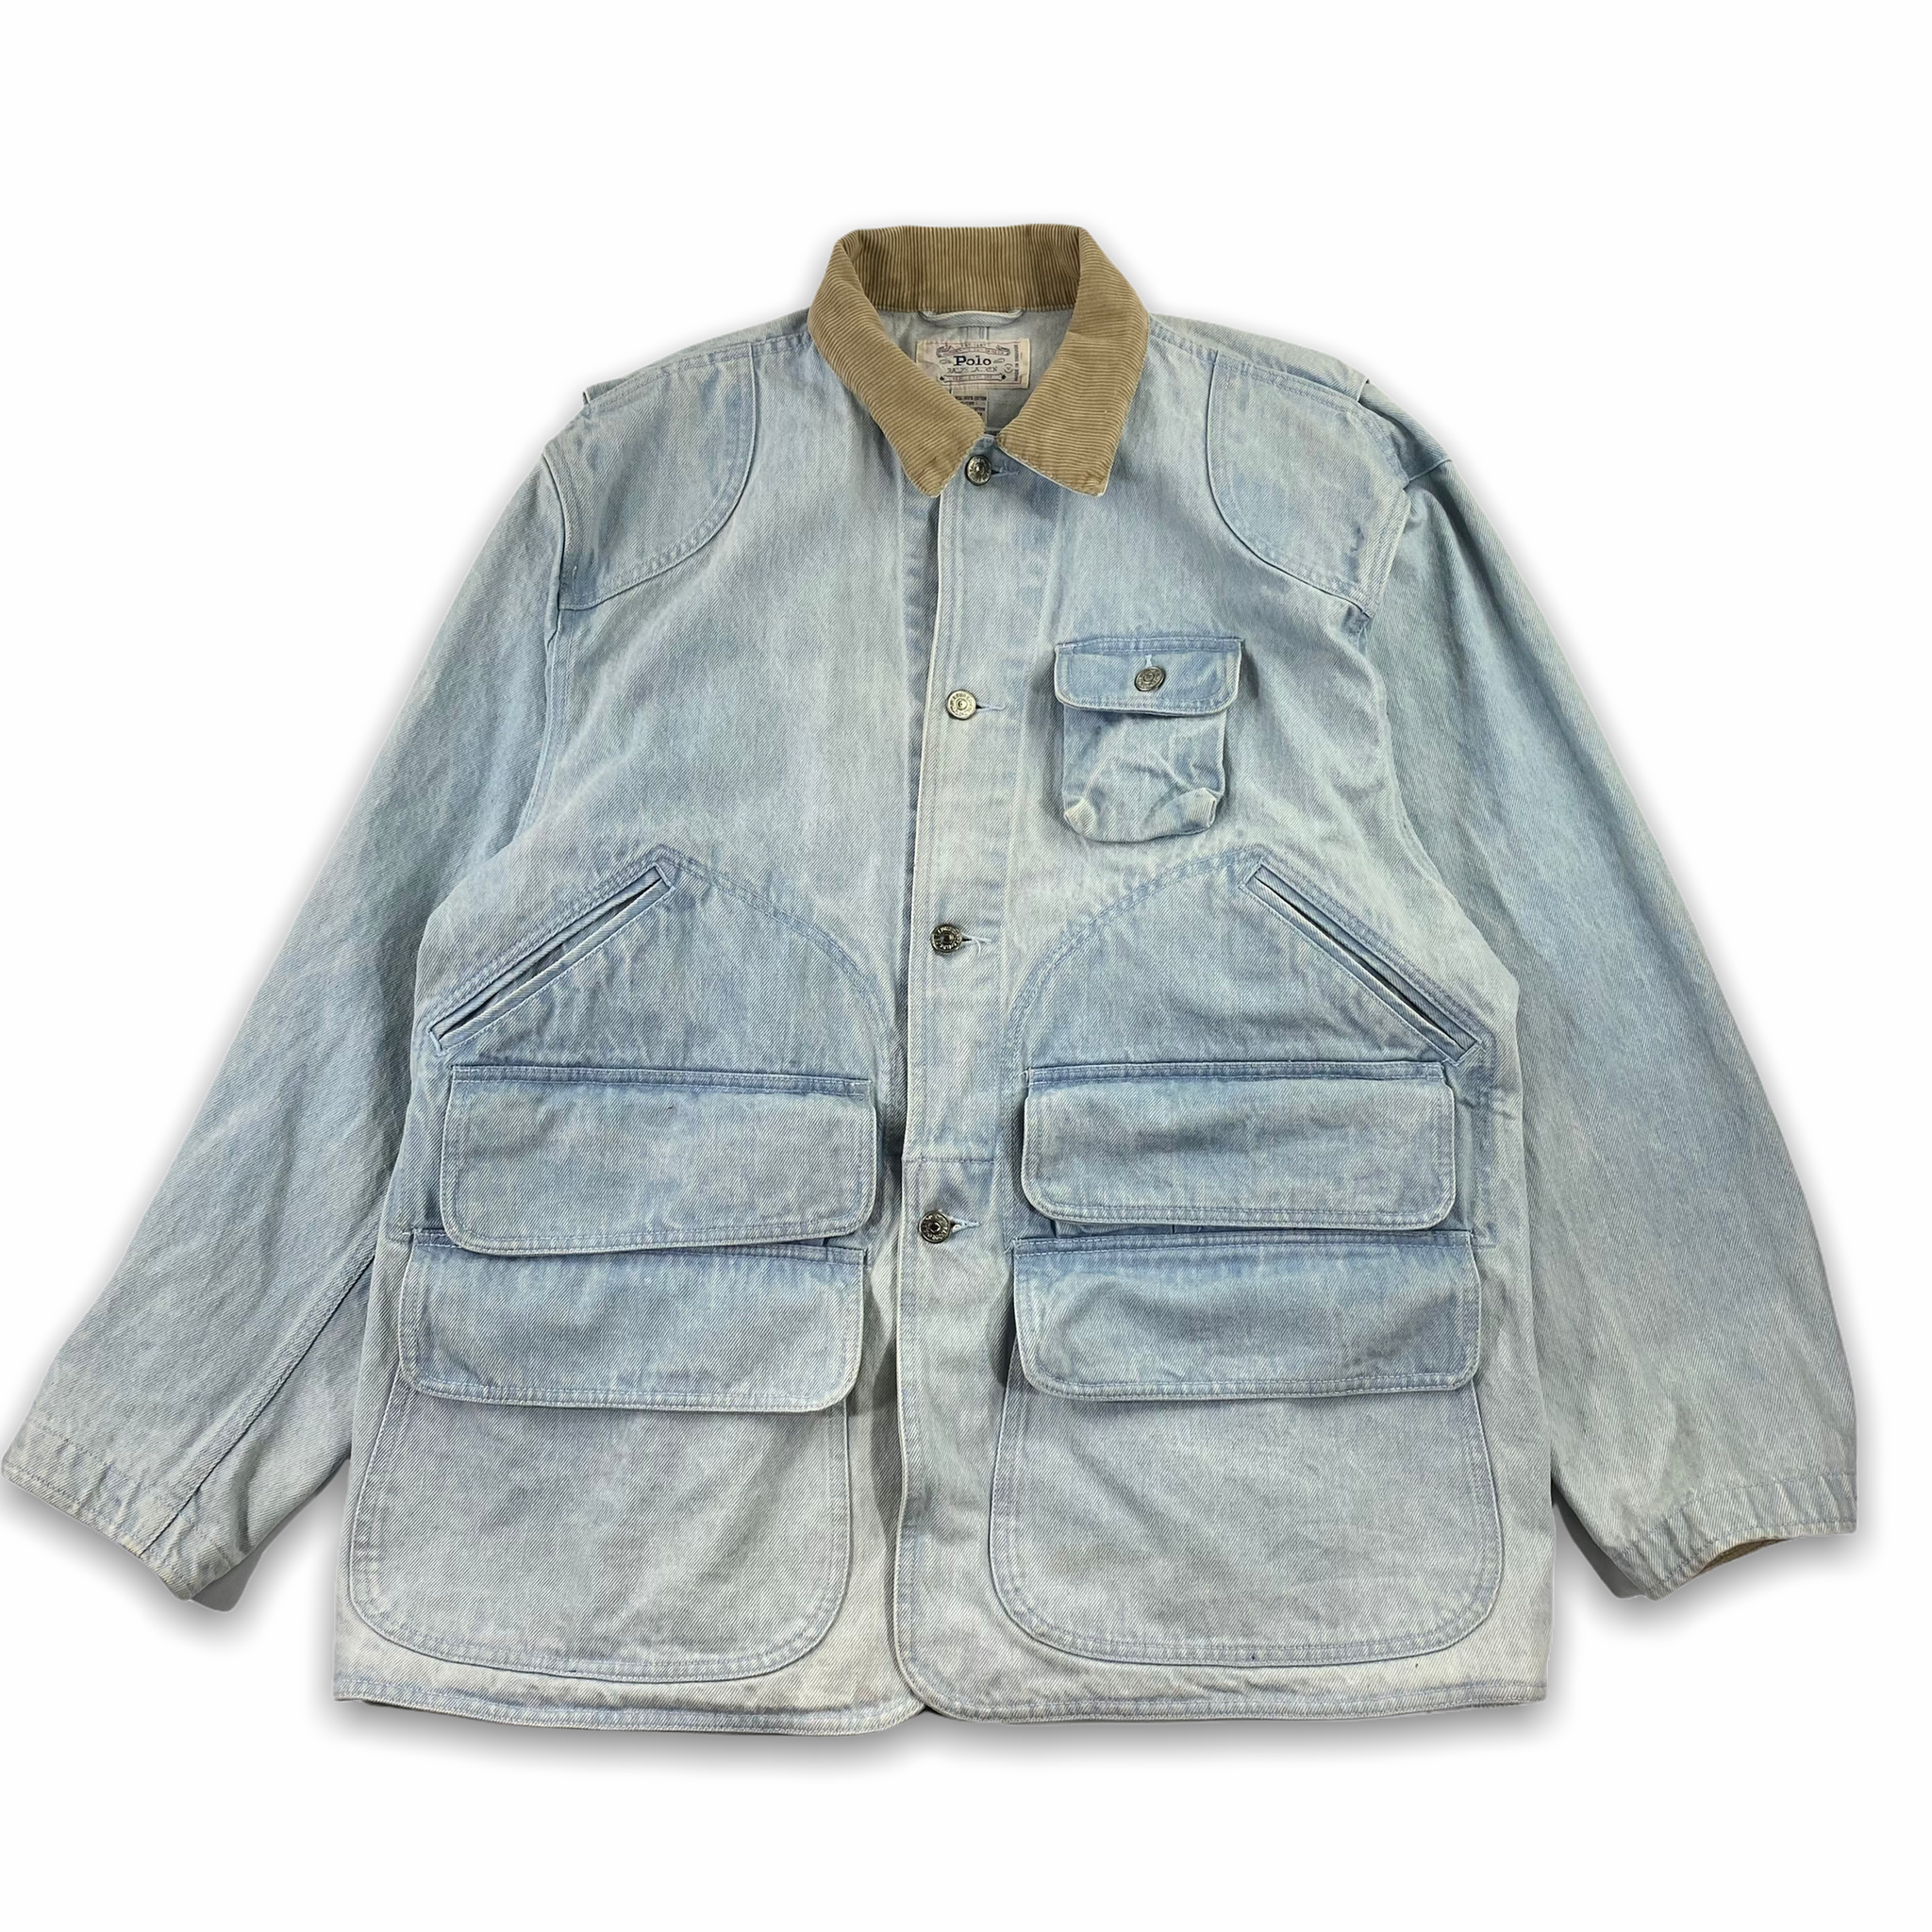 Polo ralph lauren hunting jacket light wash M/L fit – Vintage Sponsor